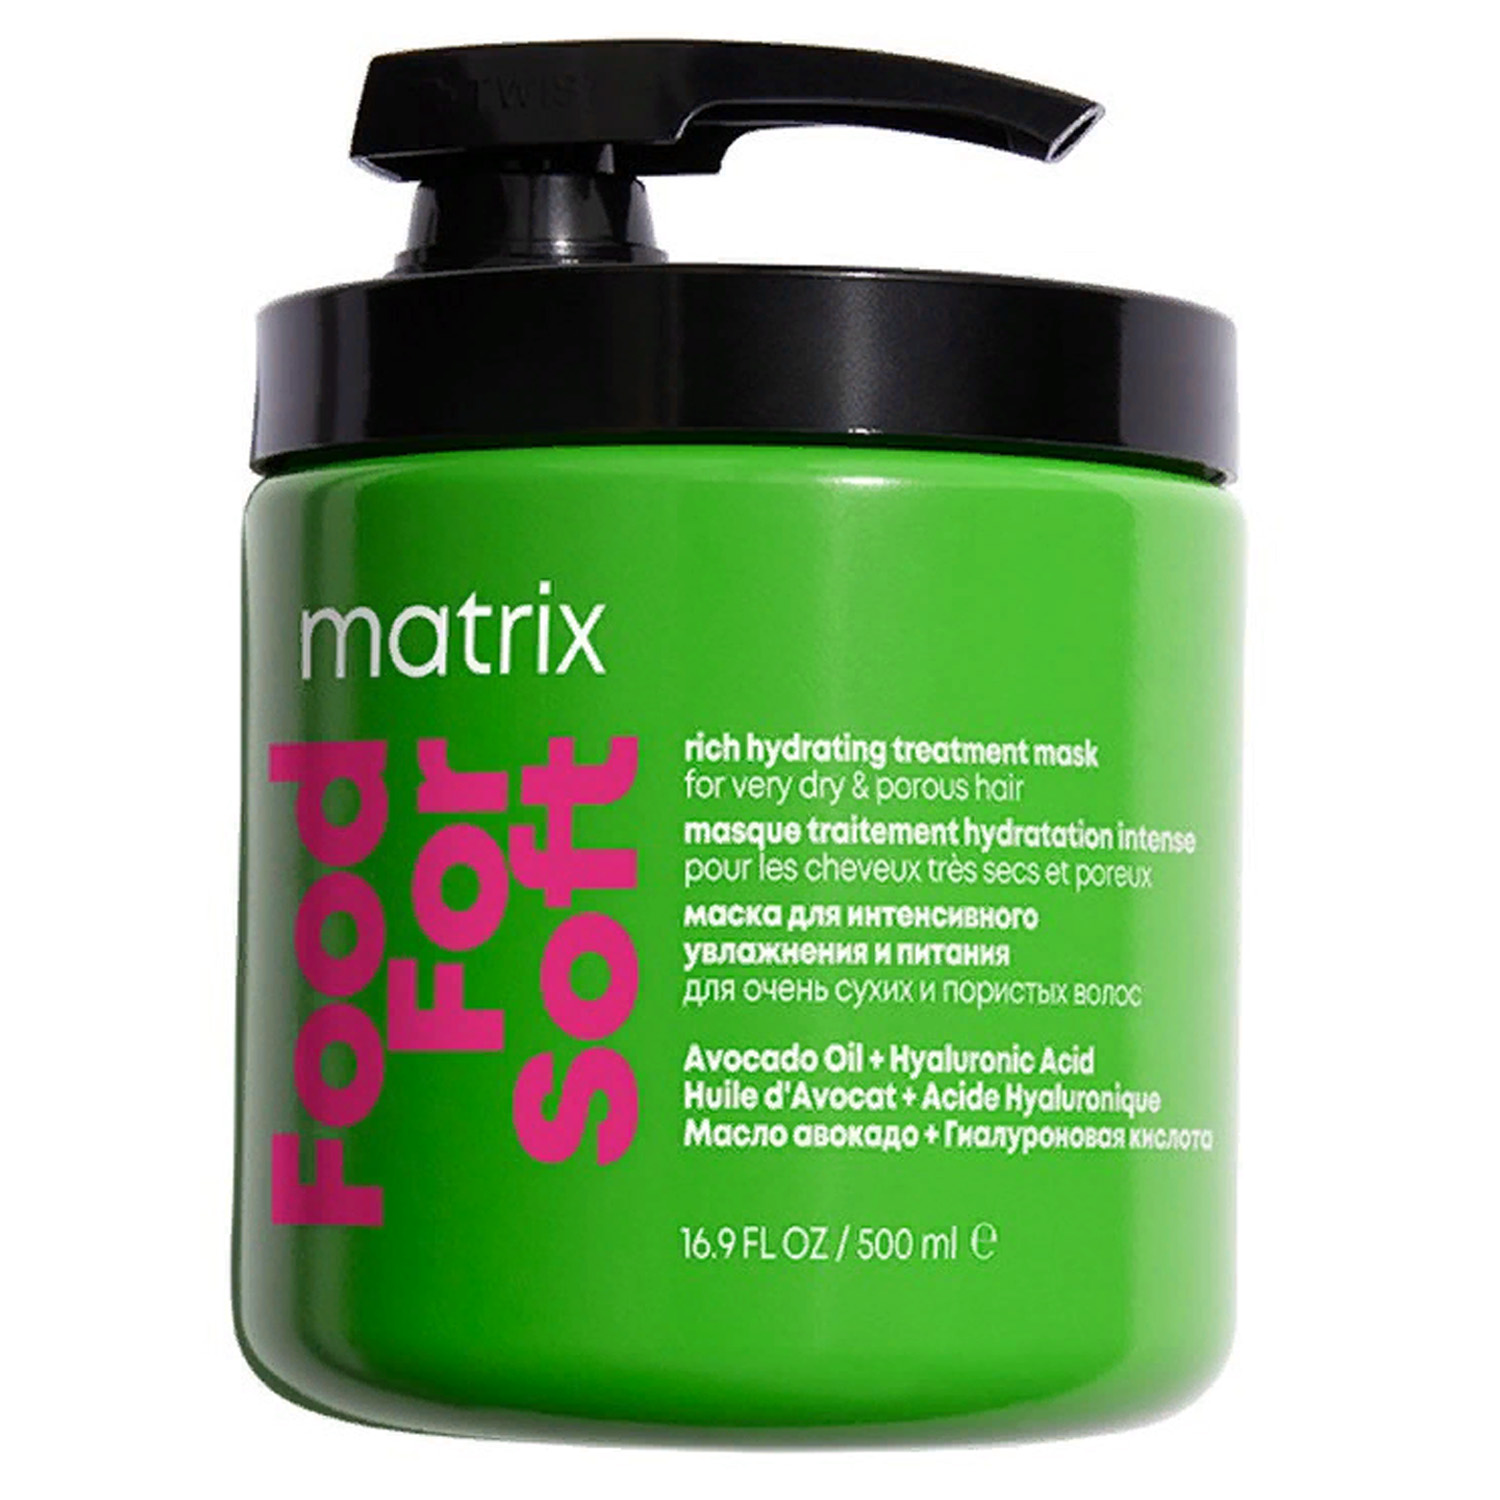 Matrix Маска для глубокого питания и увлажнения сухих волос, 500 мл (Matrix, Food For Soft)